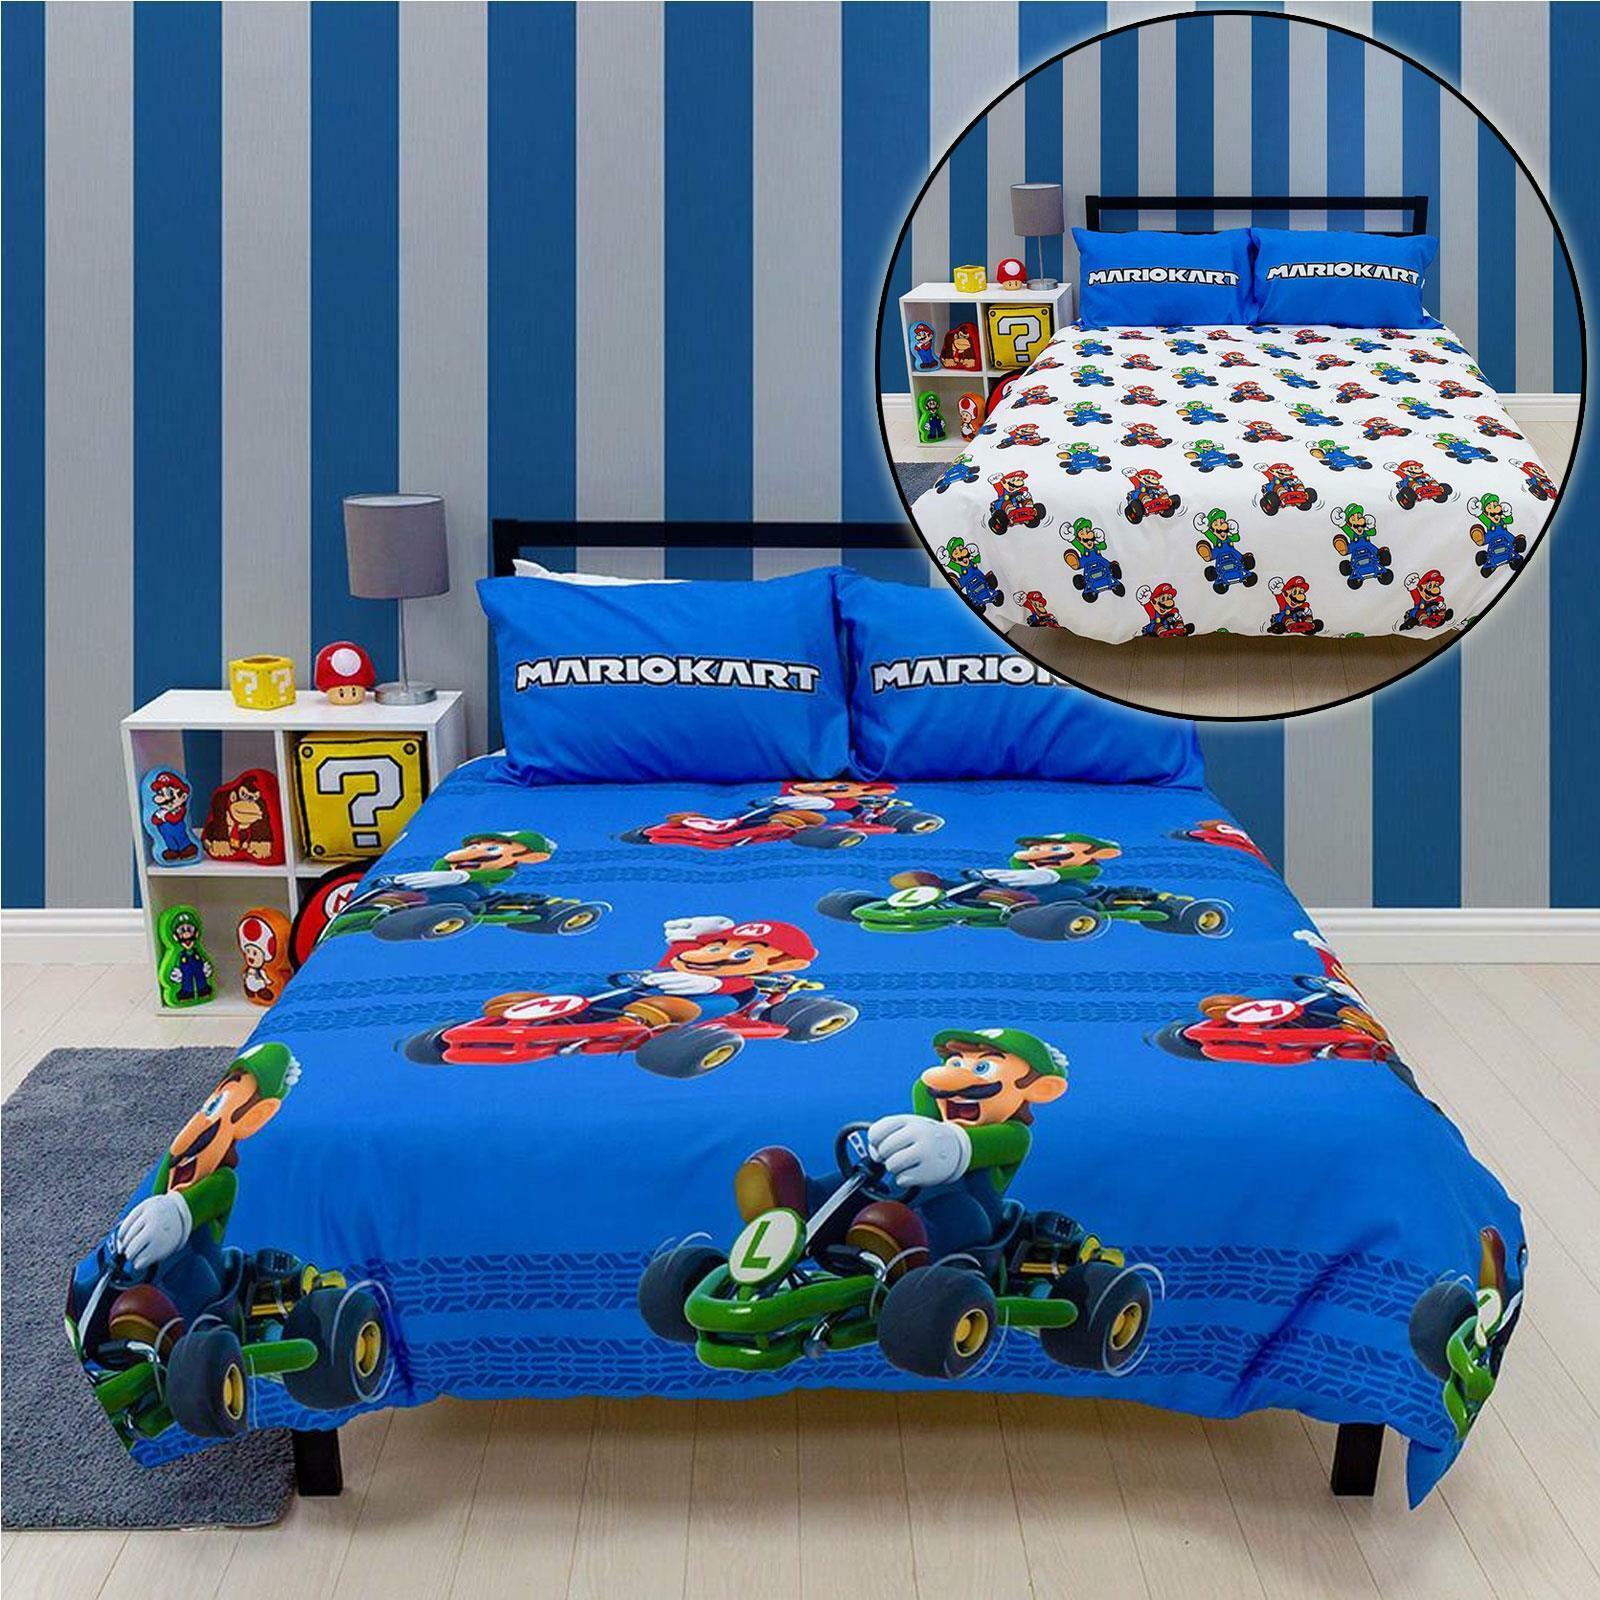 sieraden Reis nieuwigheid Super Mario dekbedovertrek tweepersoons blauw 200 x 200 cm - Dekbeddengoed  - Beddengoed kopen